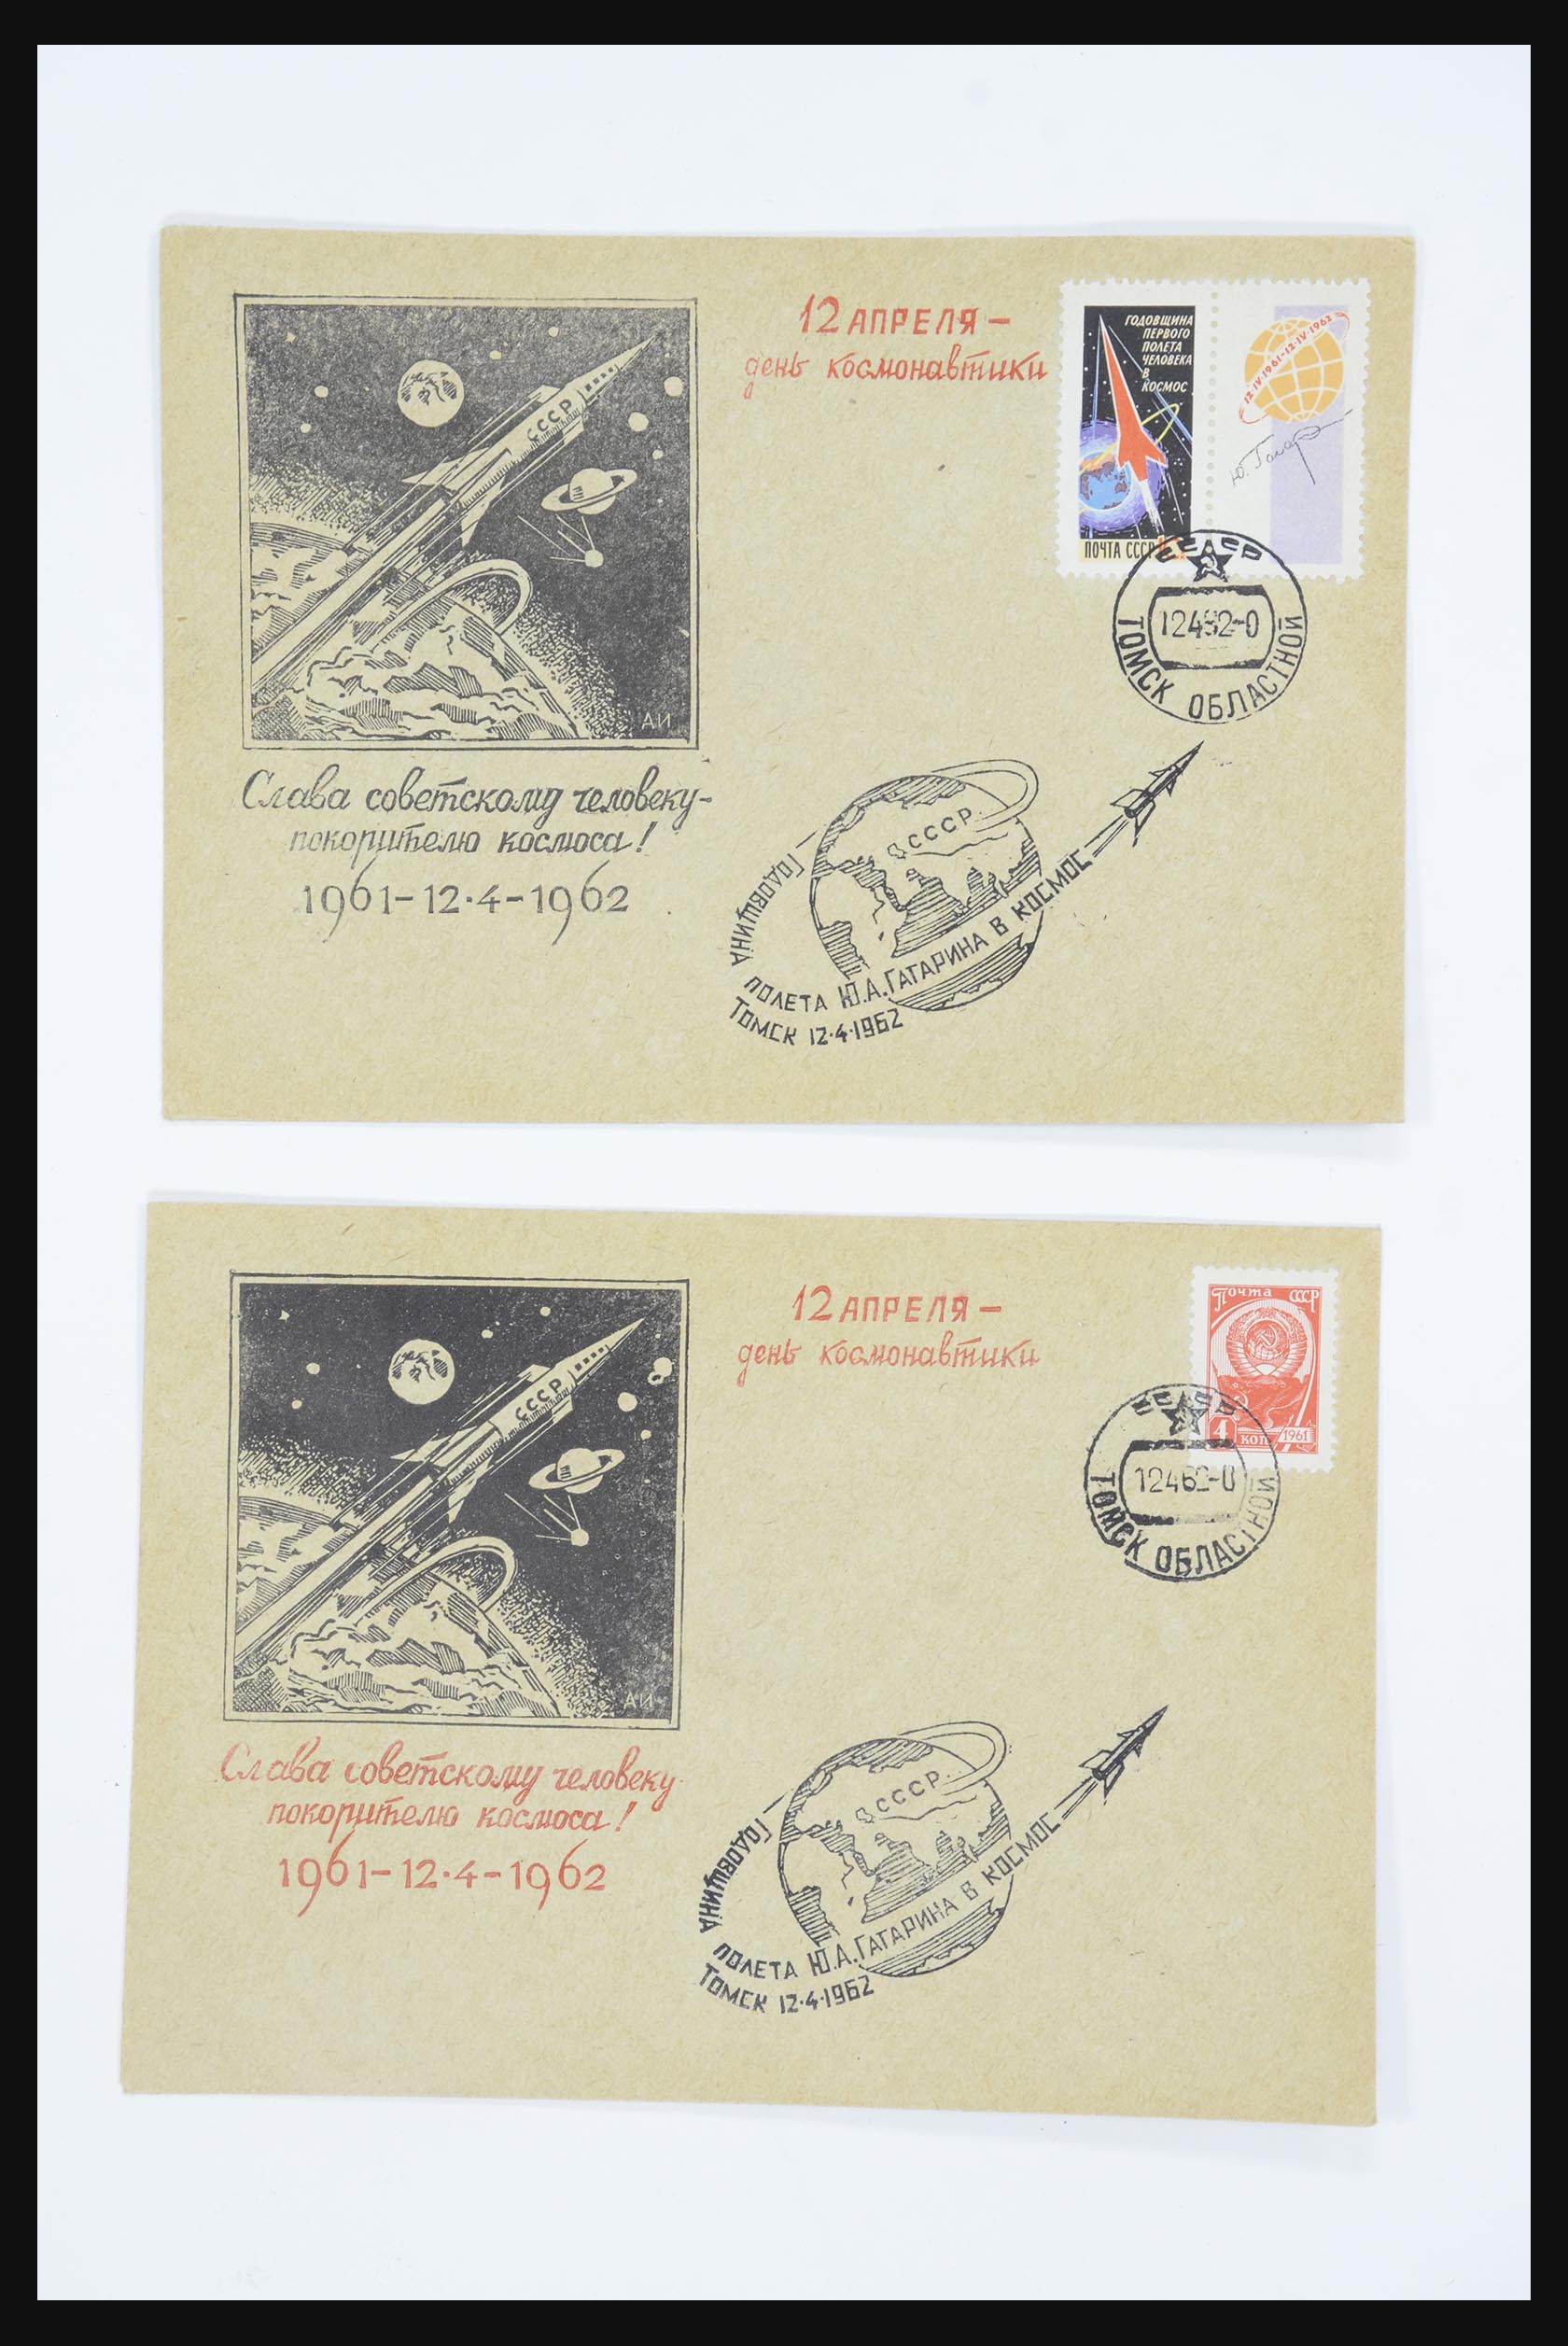 31605 0057 - 31605 Rusland postwaardestukken jaren 50-60.